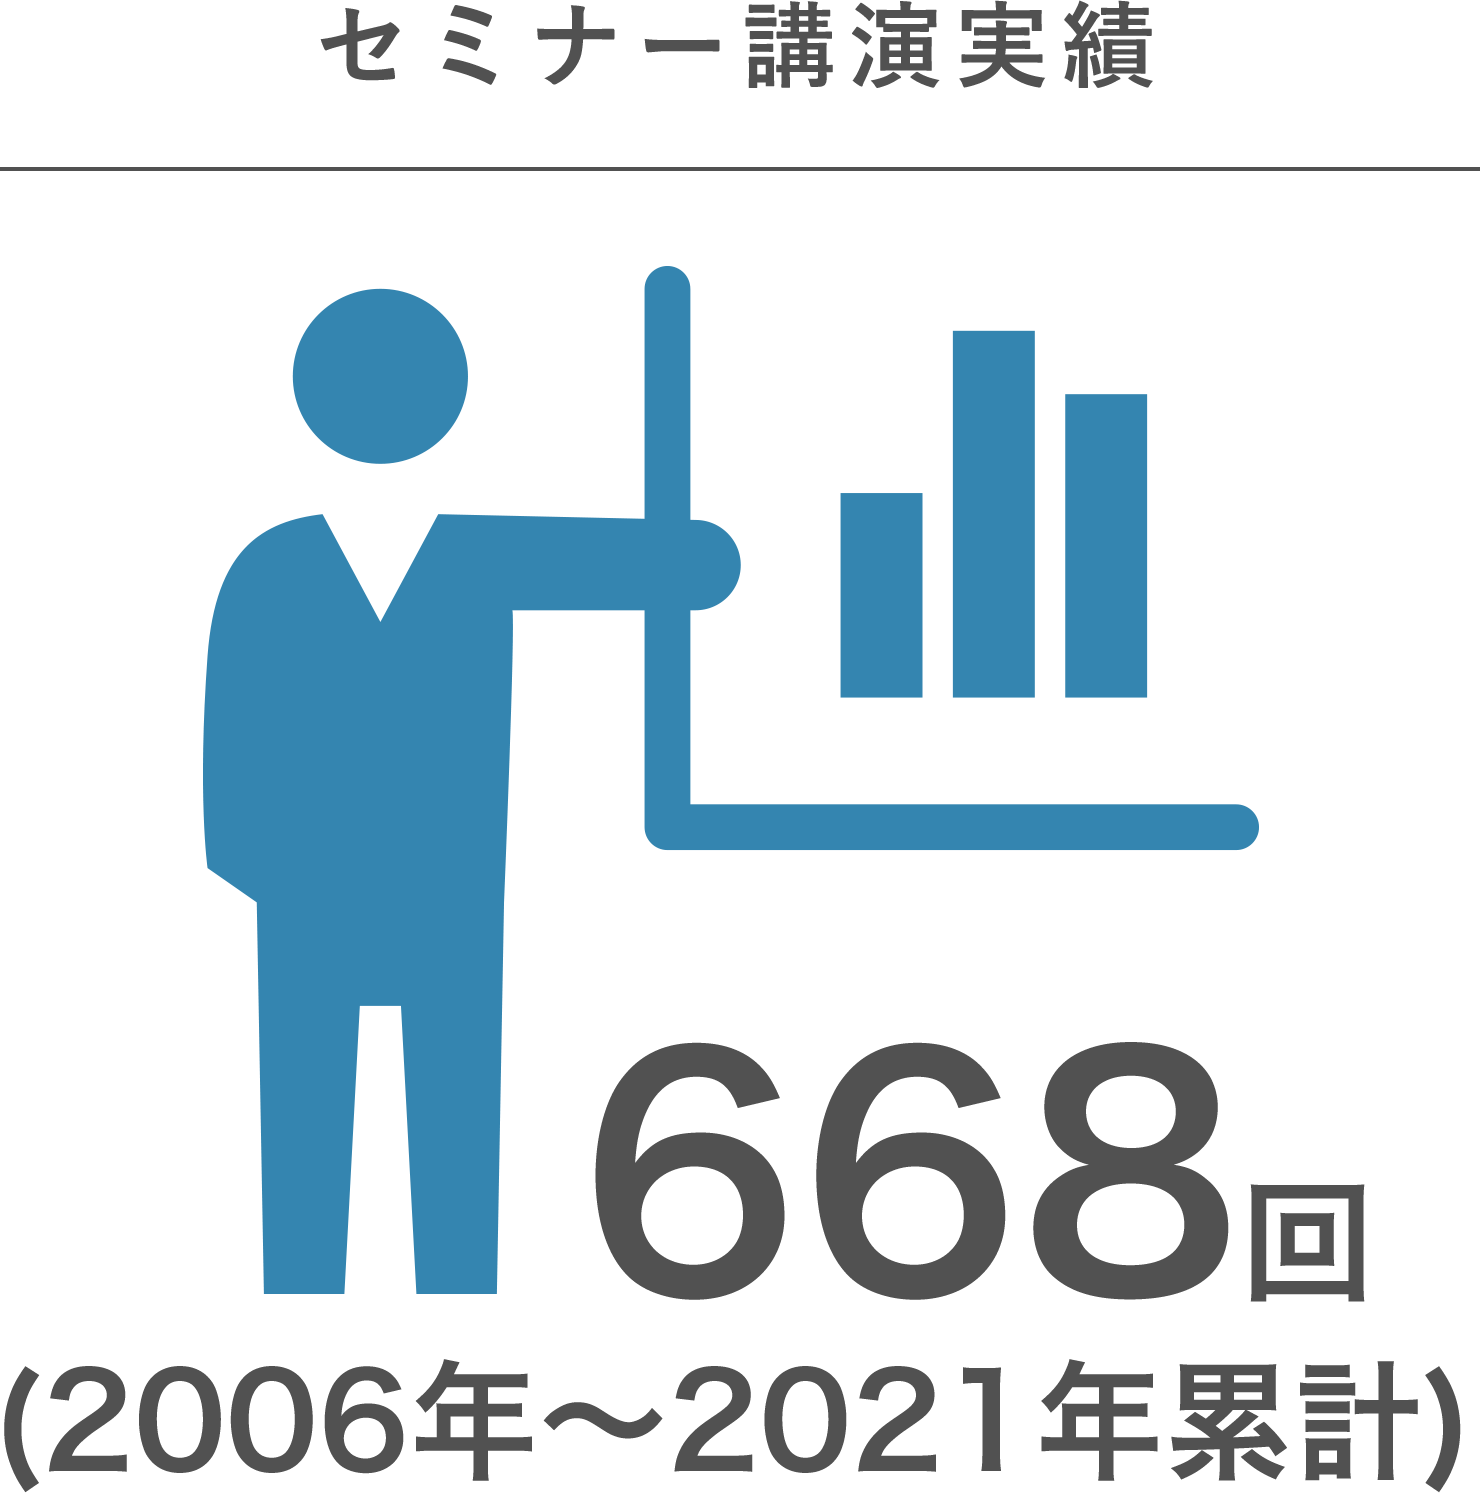 セミナー講演実績　668回(2006年～2021年累計)